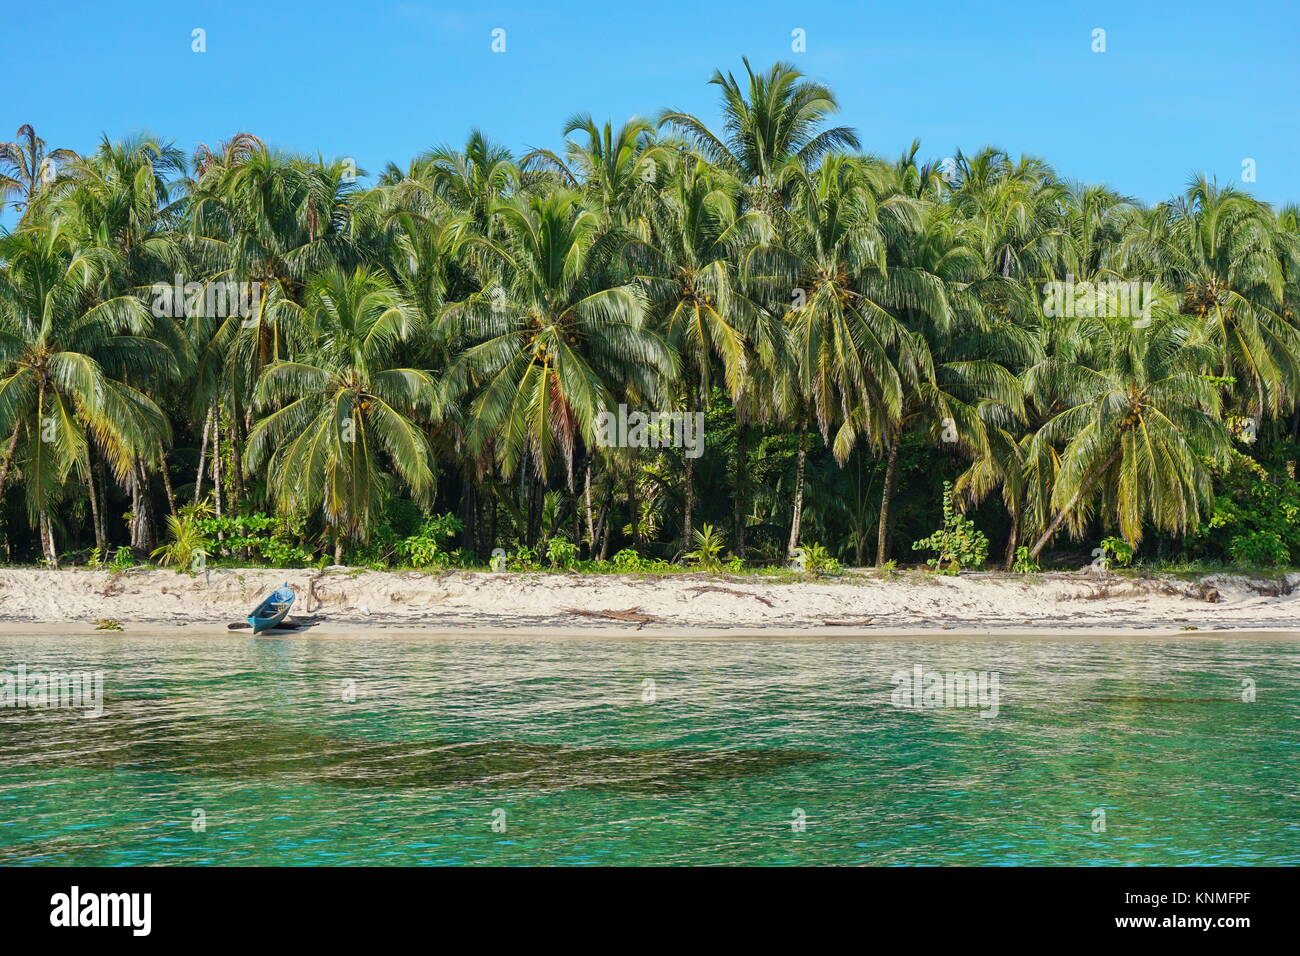 Lussureggiante spiaggia tropicale con palme di cocco e un di legno piroga sulla sabbia, il mare dei Caraibi, Bocas del Toro, Panama America Centrale Foto Stock